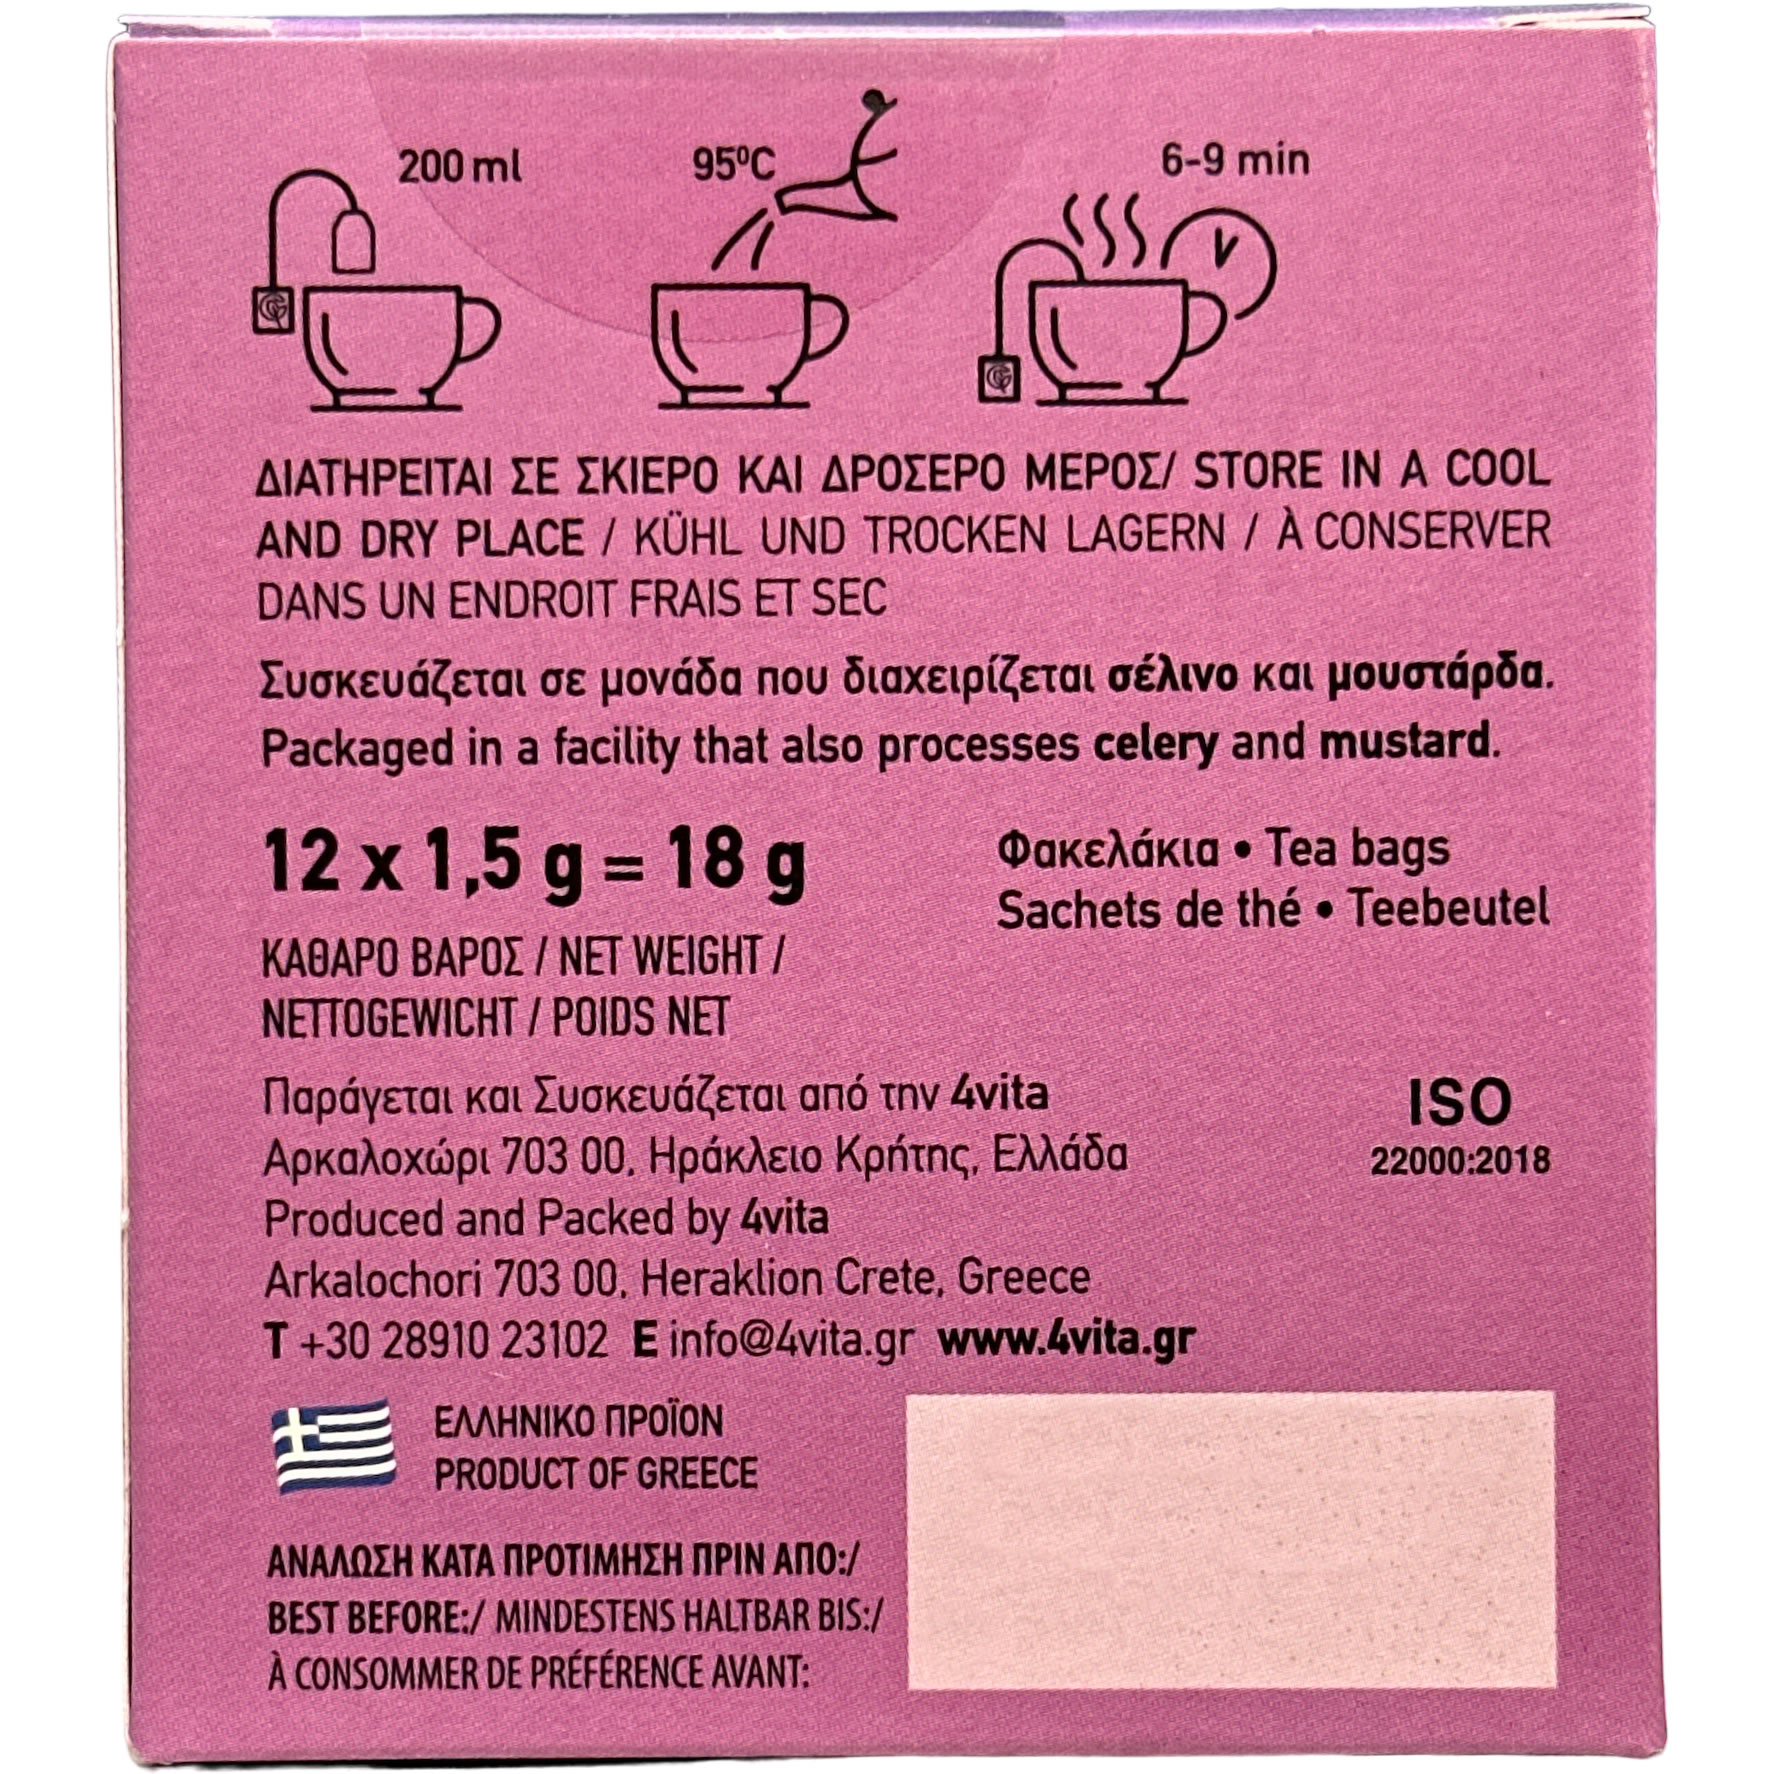 Minze Tee - 4vita - (Box / 12 Teebeutel á 1,5 g)